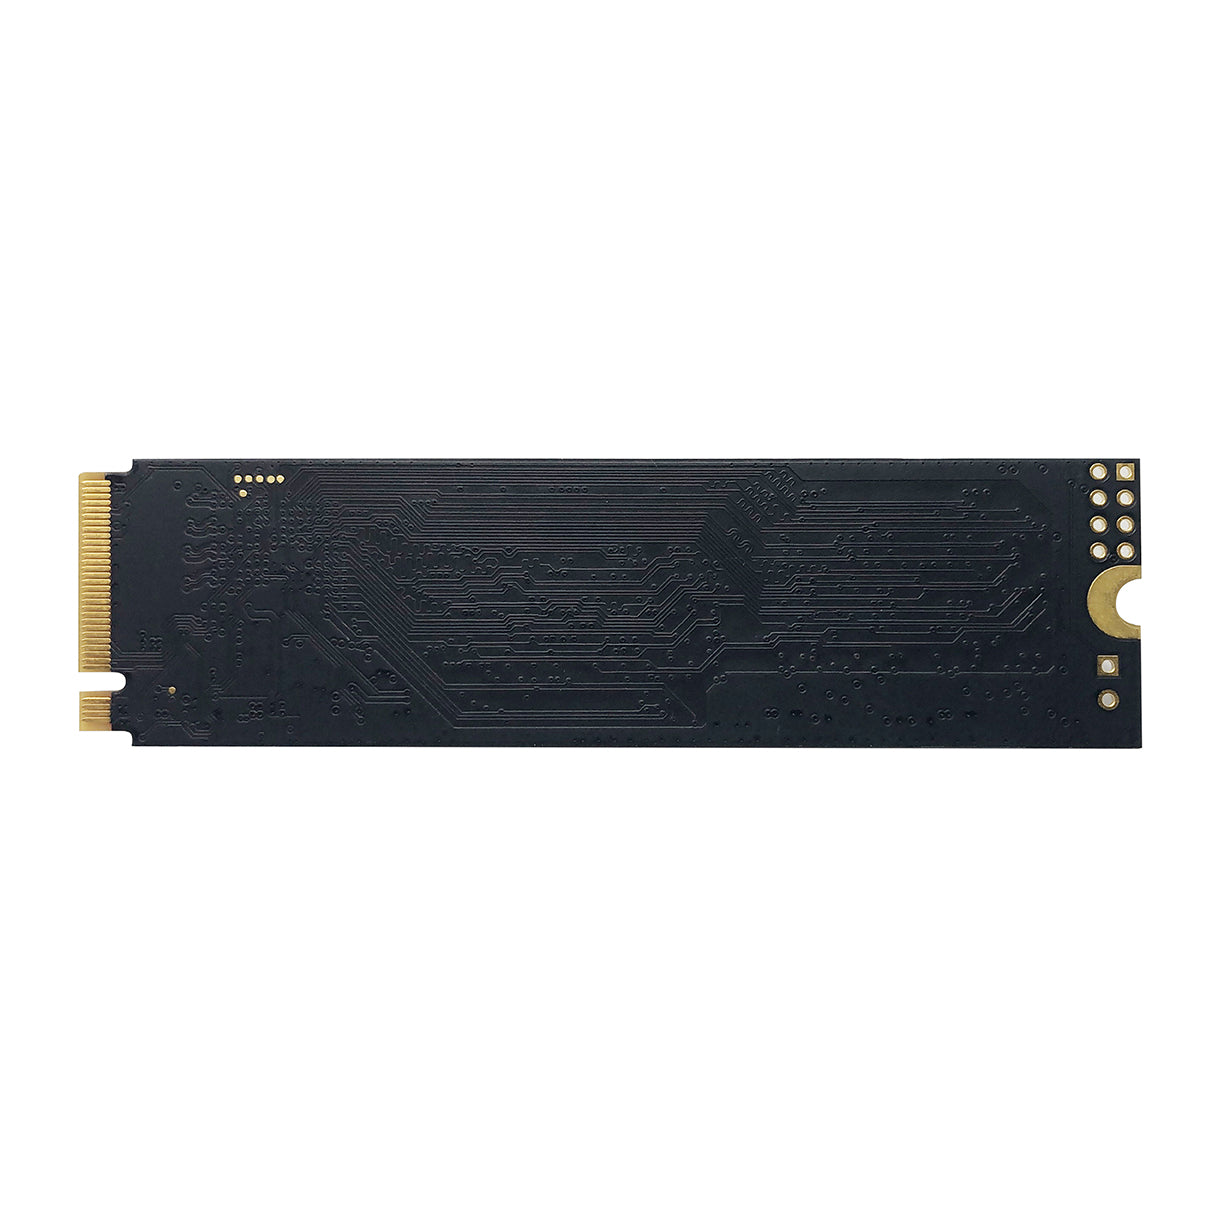 Disco duro solido Patriot P300 512GB M.2 PCIe (P300P512GM28)